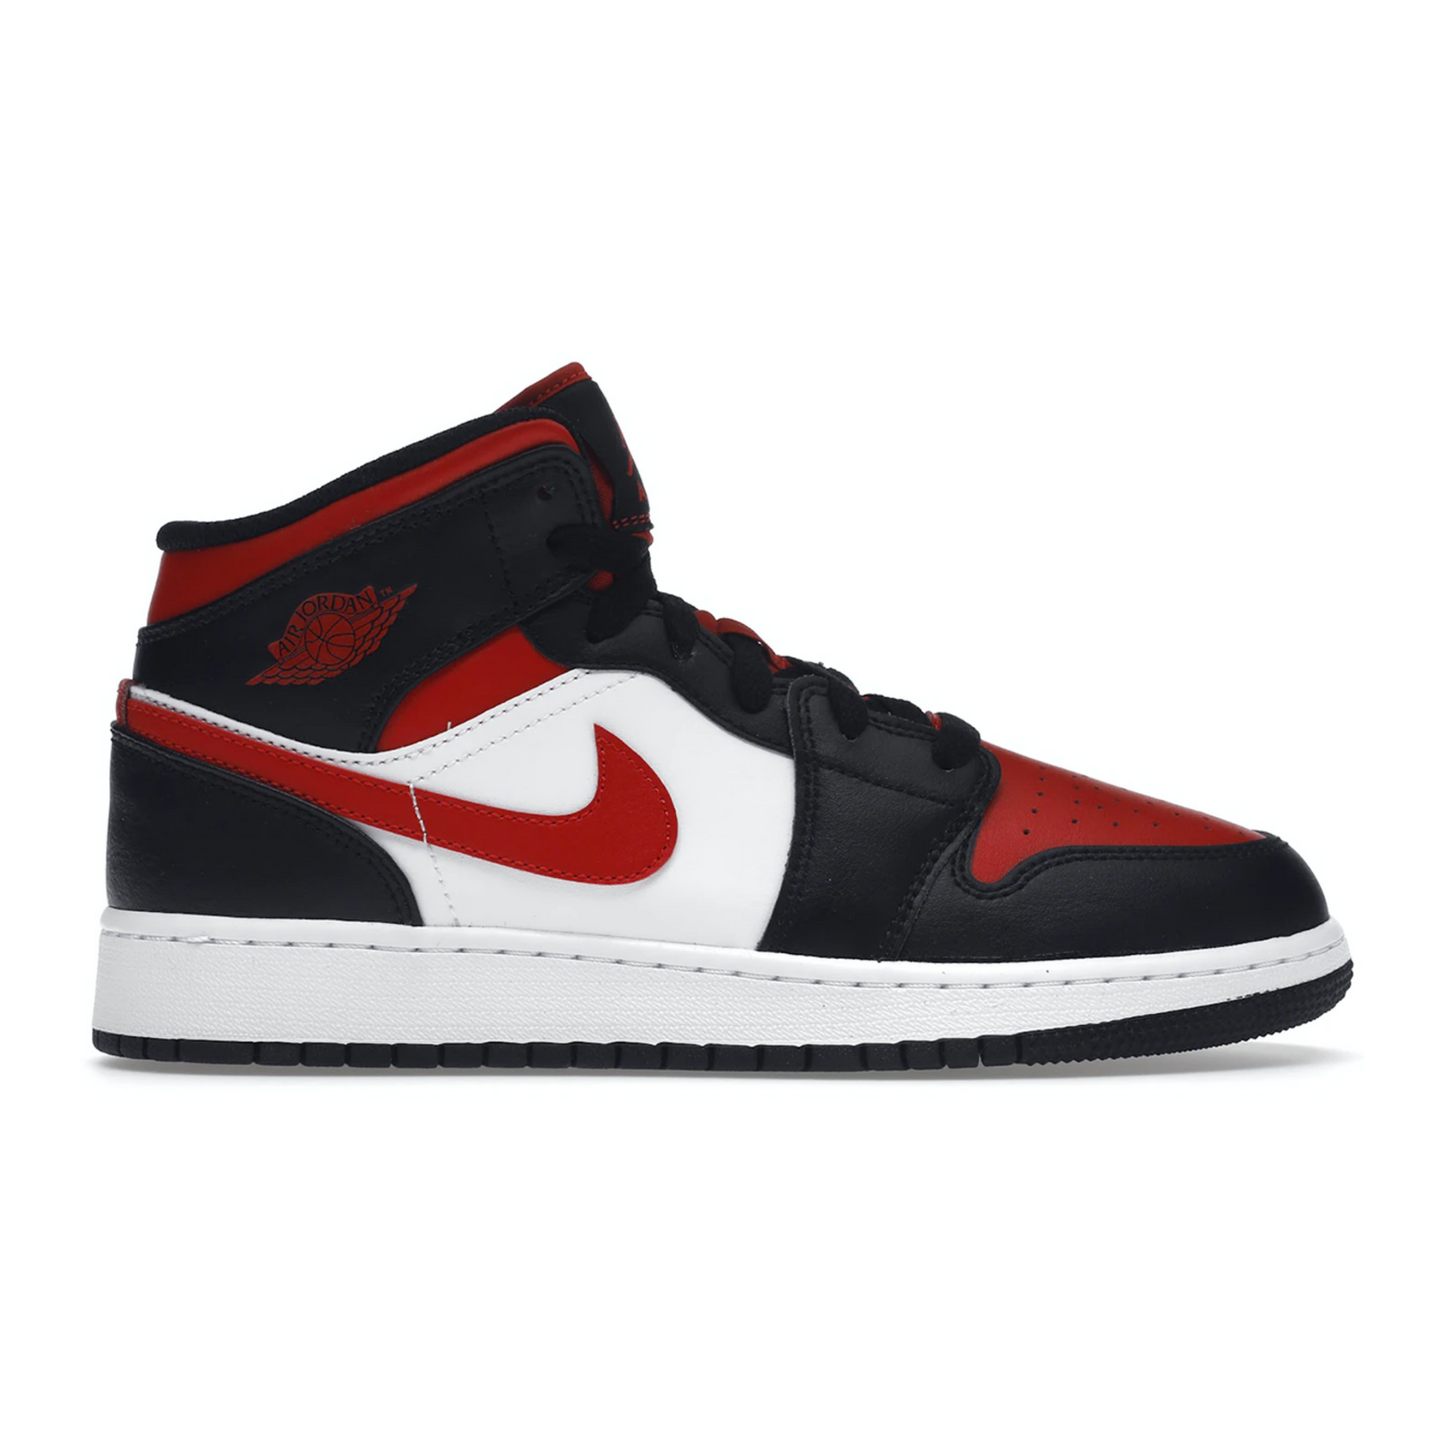 sneakers, jordan 1, jordan red black white, trainers, GS